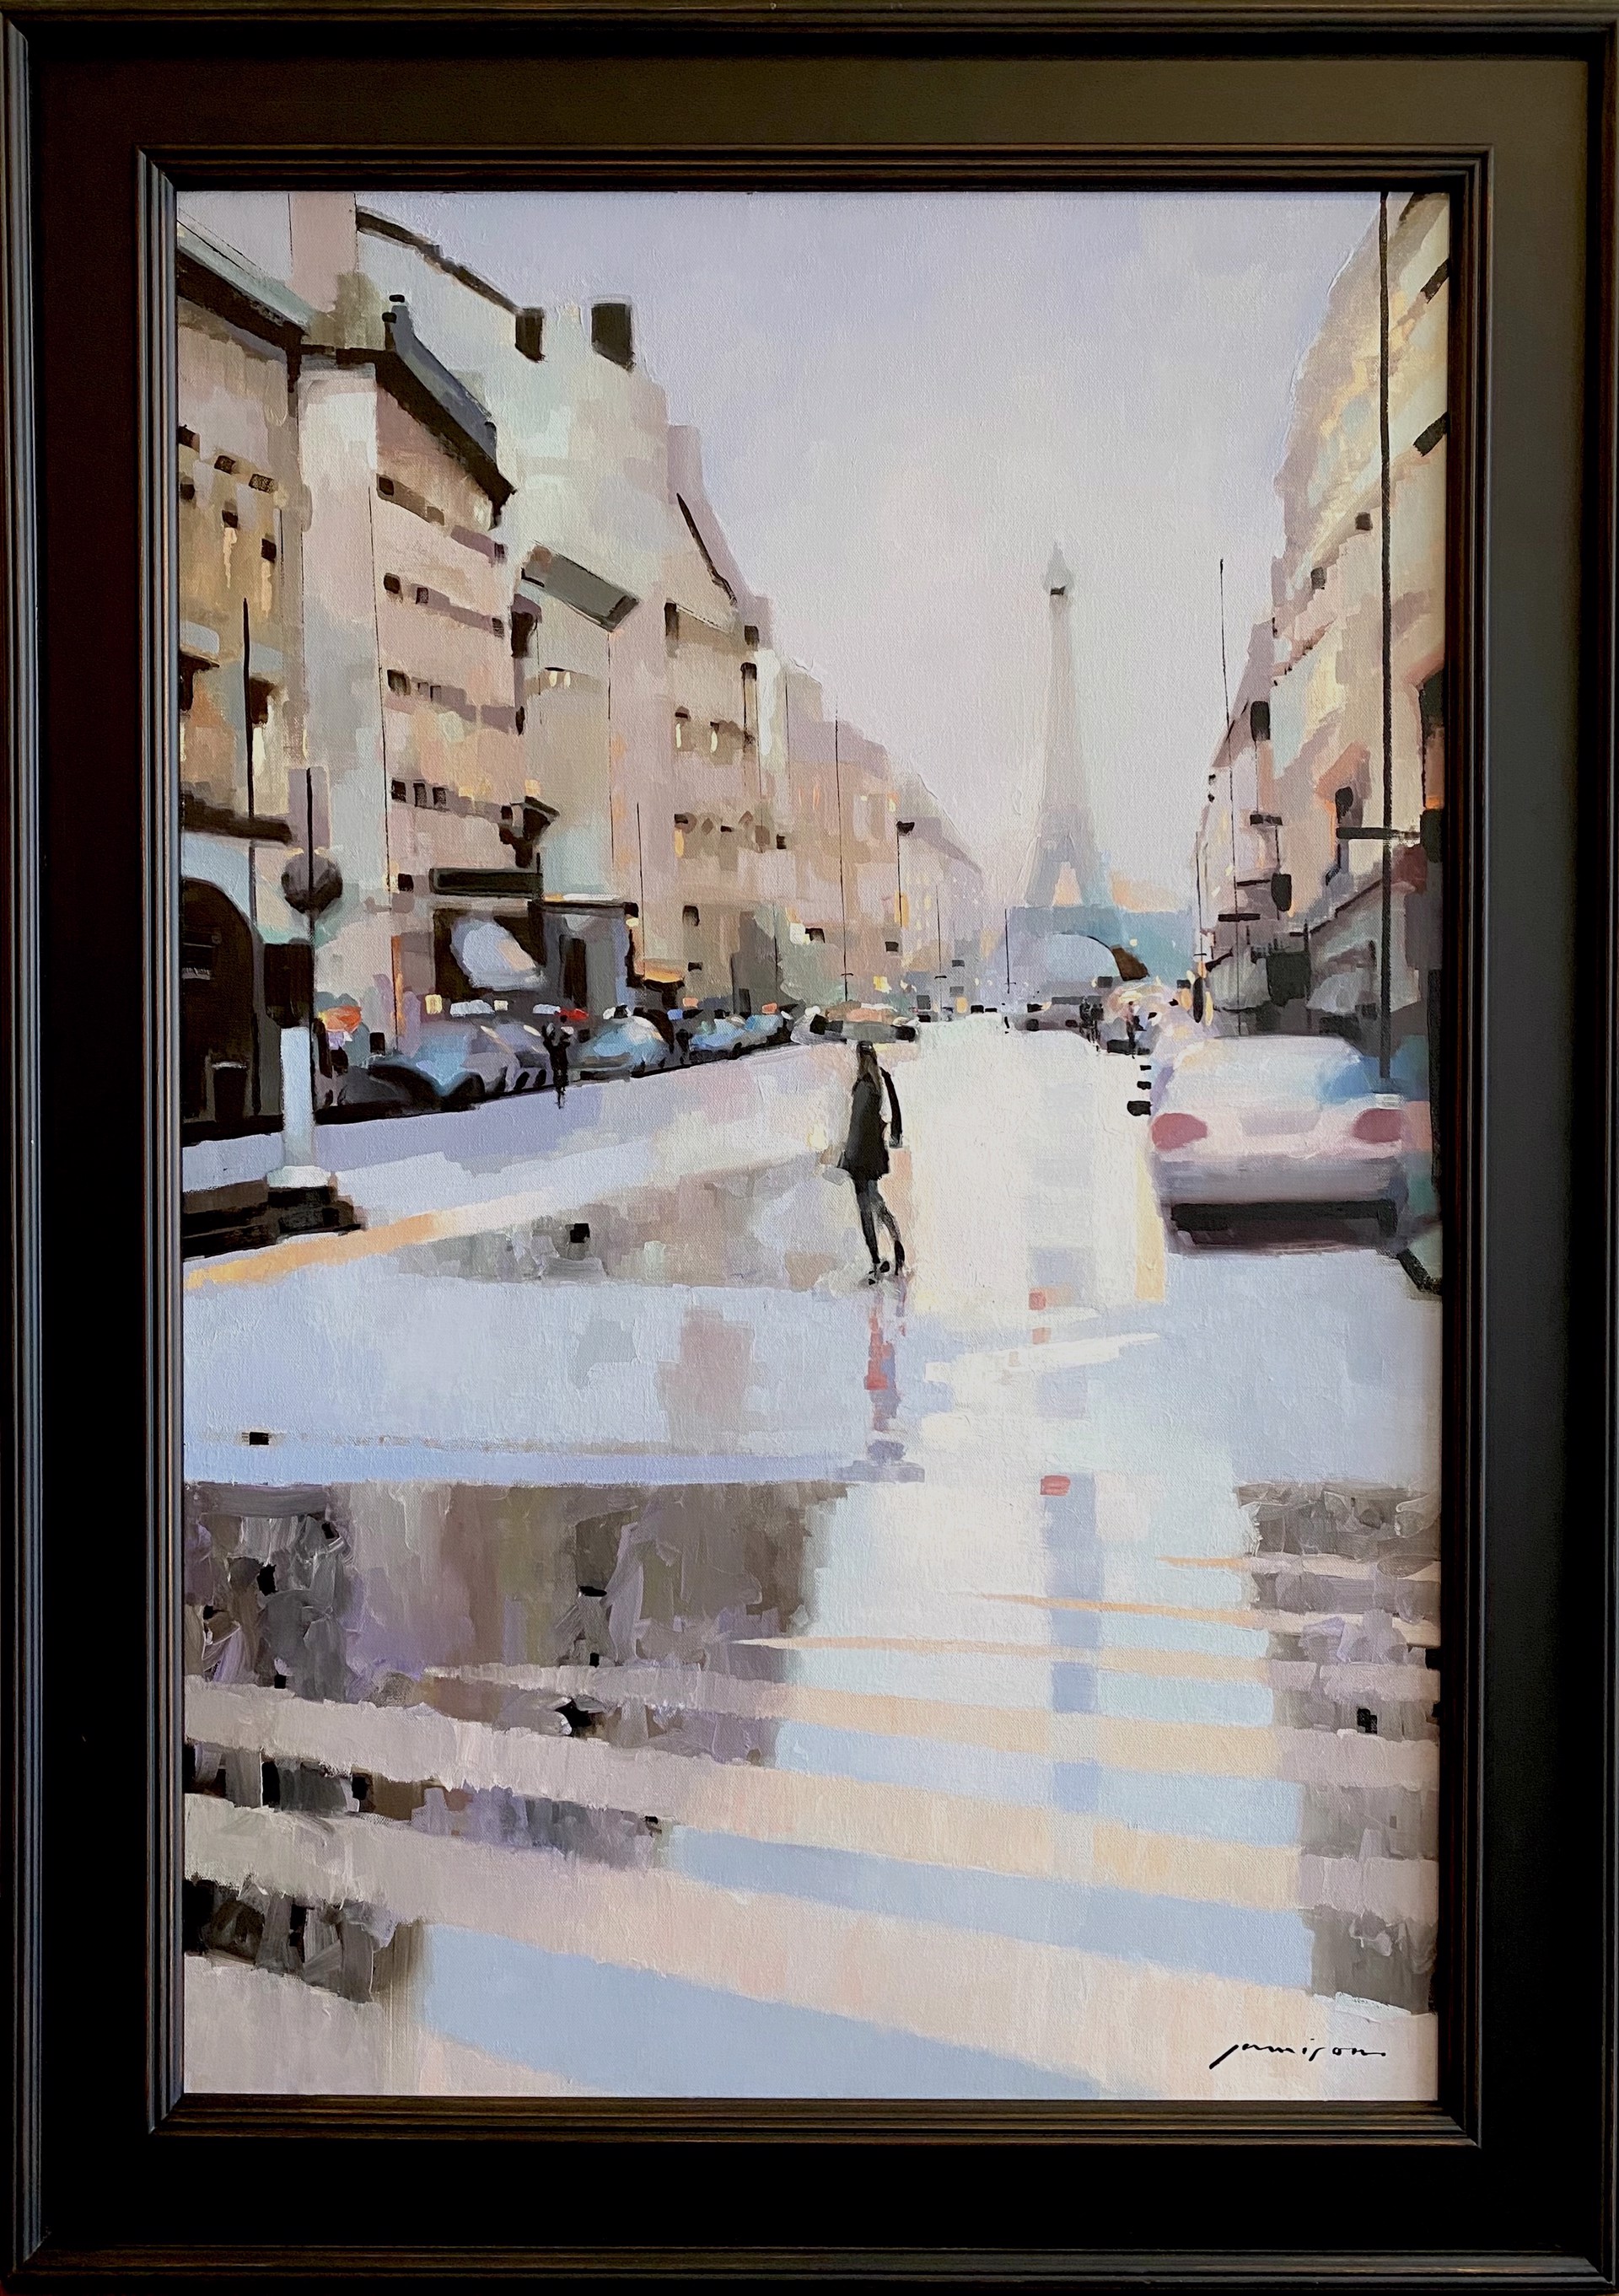 Morning in Paris by Jeff Jamison